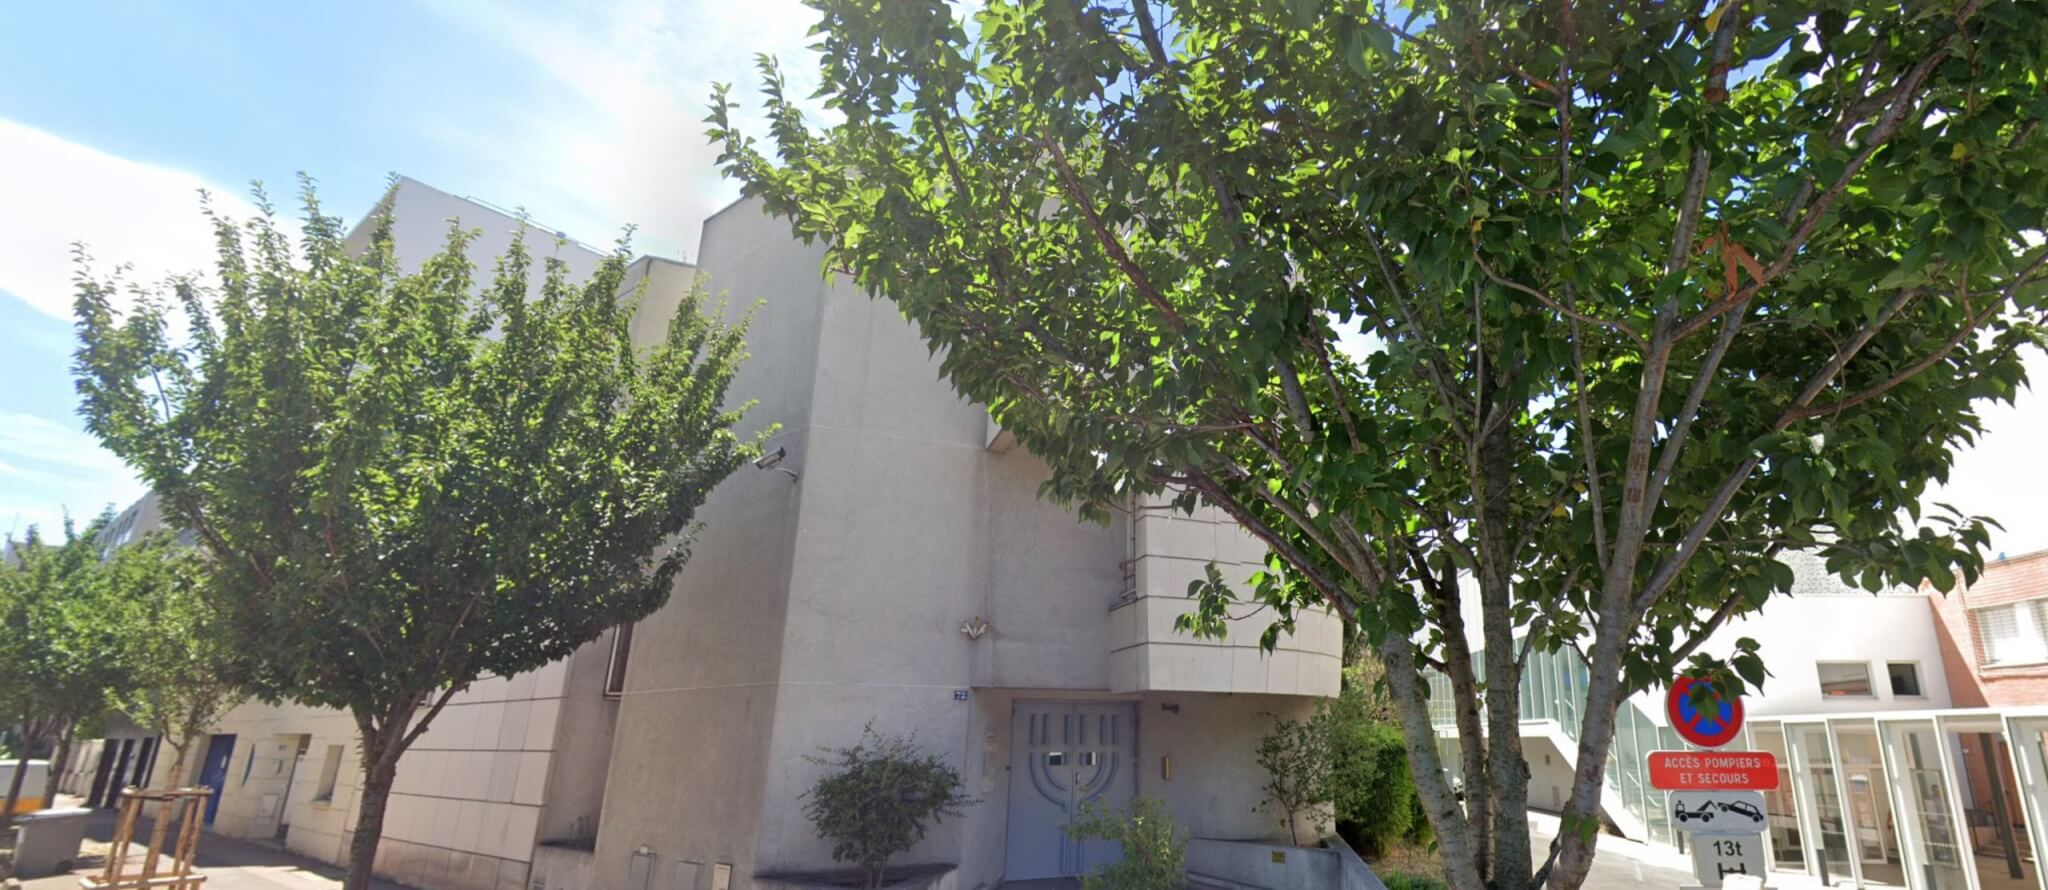 Un homme condamné à huit mois de prison avec sursis pour des tags sur une synagogue d'Issy-les-Moulineaux